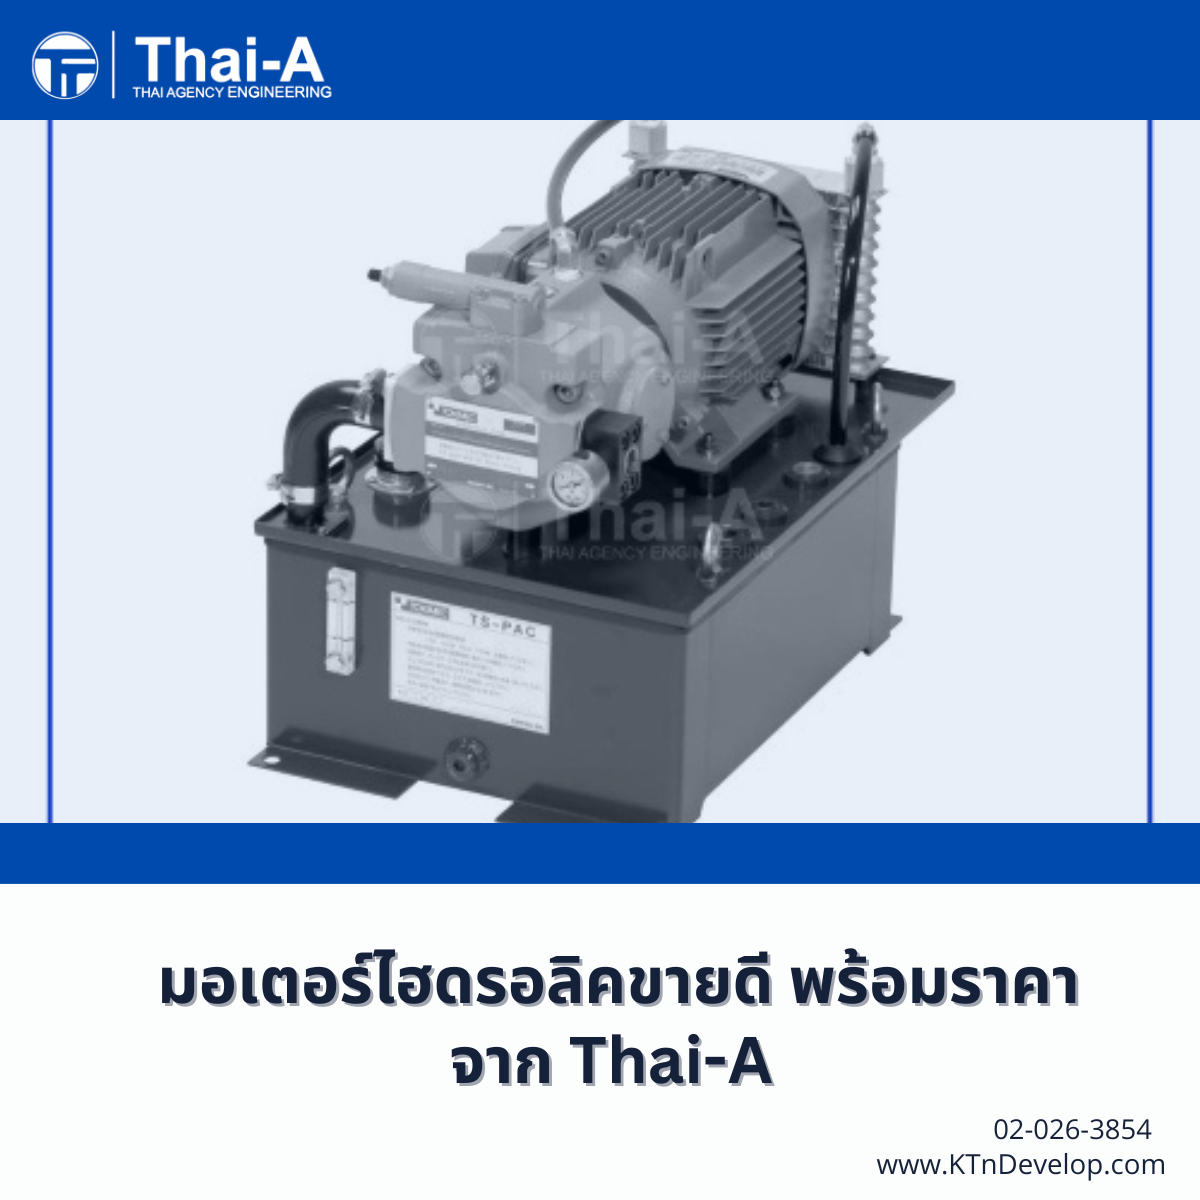 มอเตอร์ไฮดรอลิคขายดี พร้อมราคาจาก Thai-A (4)